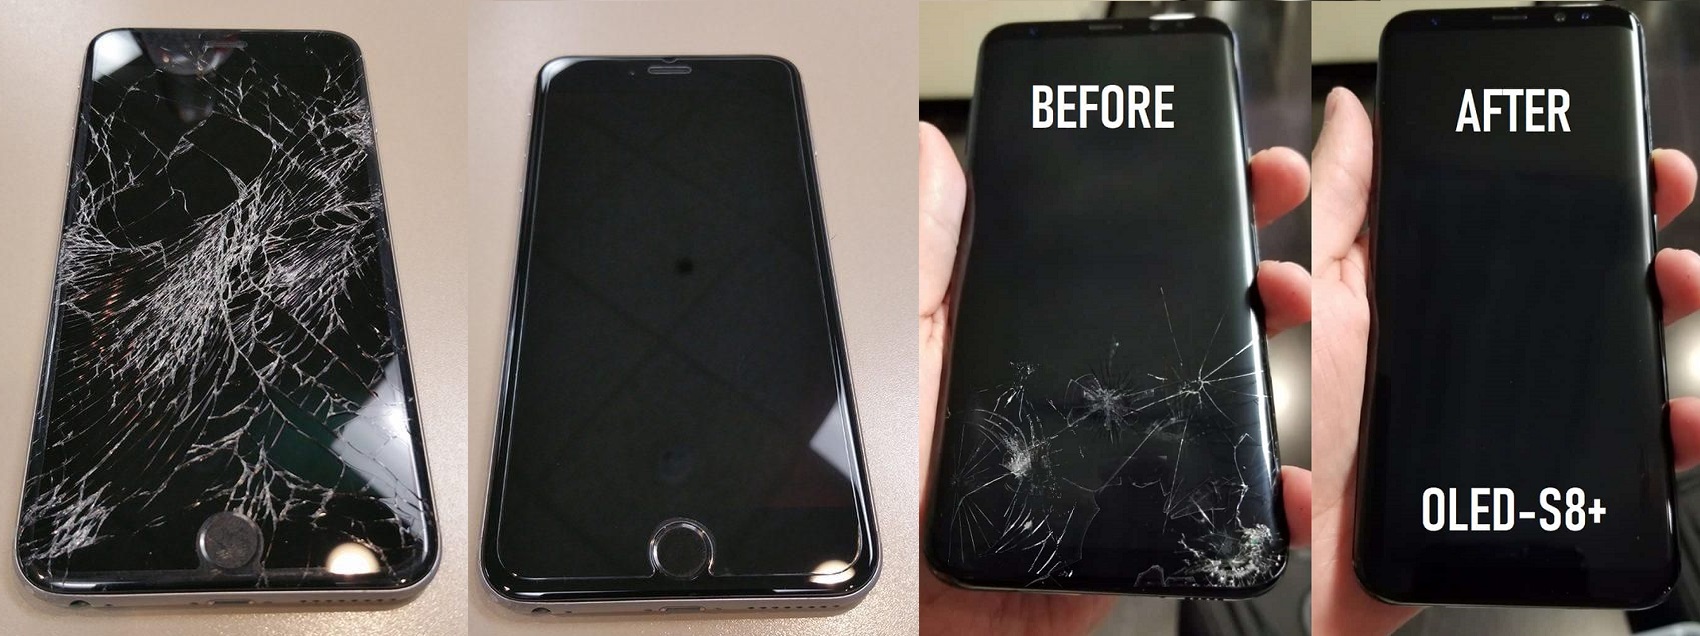 Phone screen repairs